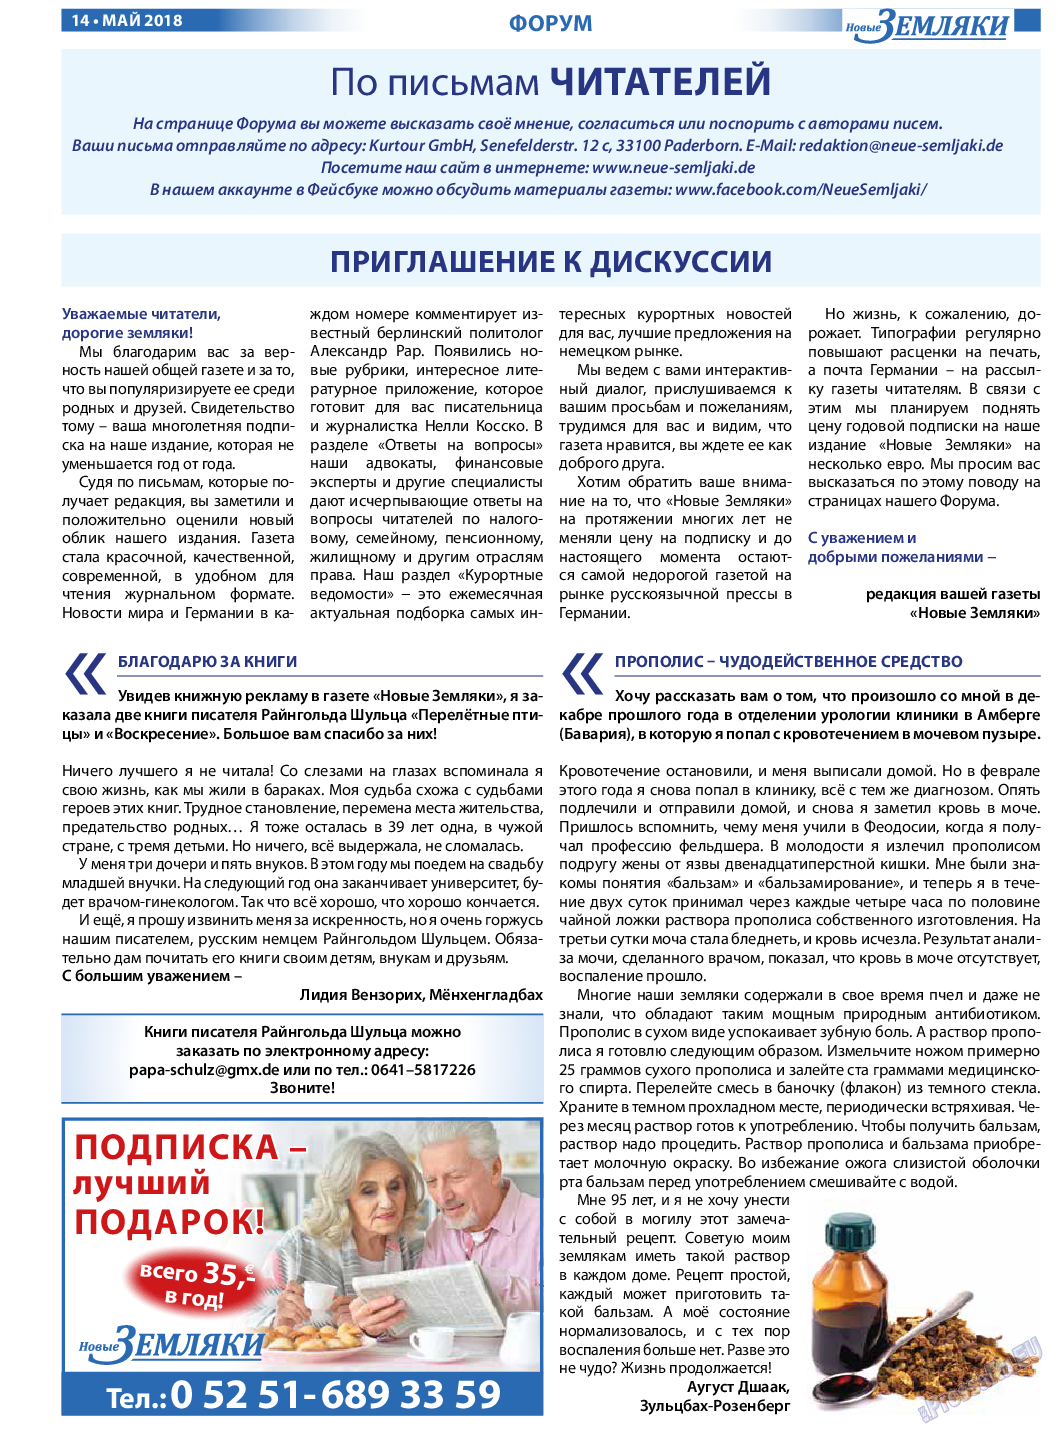 Новые Земляки, газета. 2018 №5 стр.14